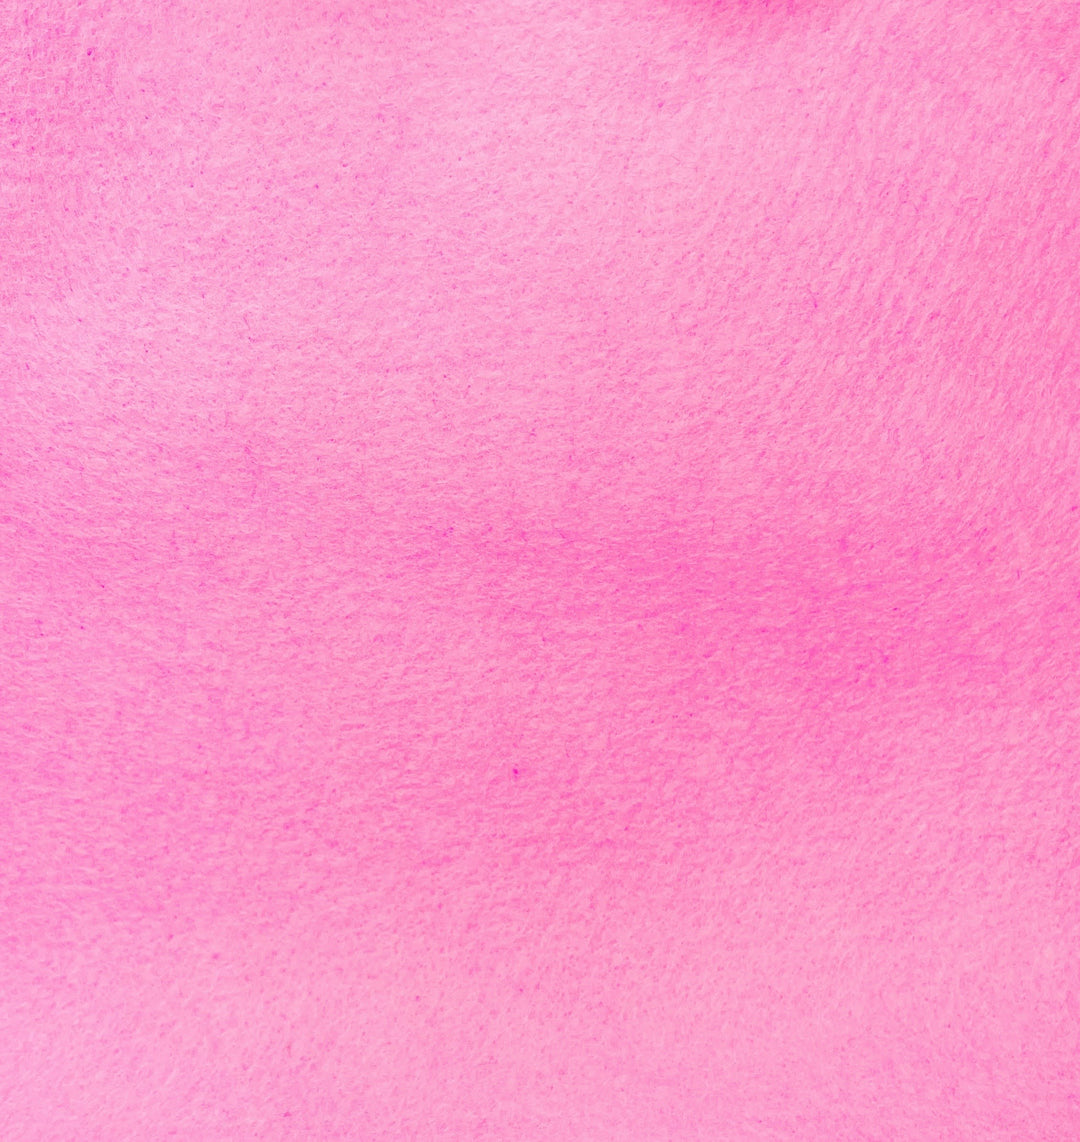 Craftermoon - Bubblegum Pink Wool Blend Felt